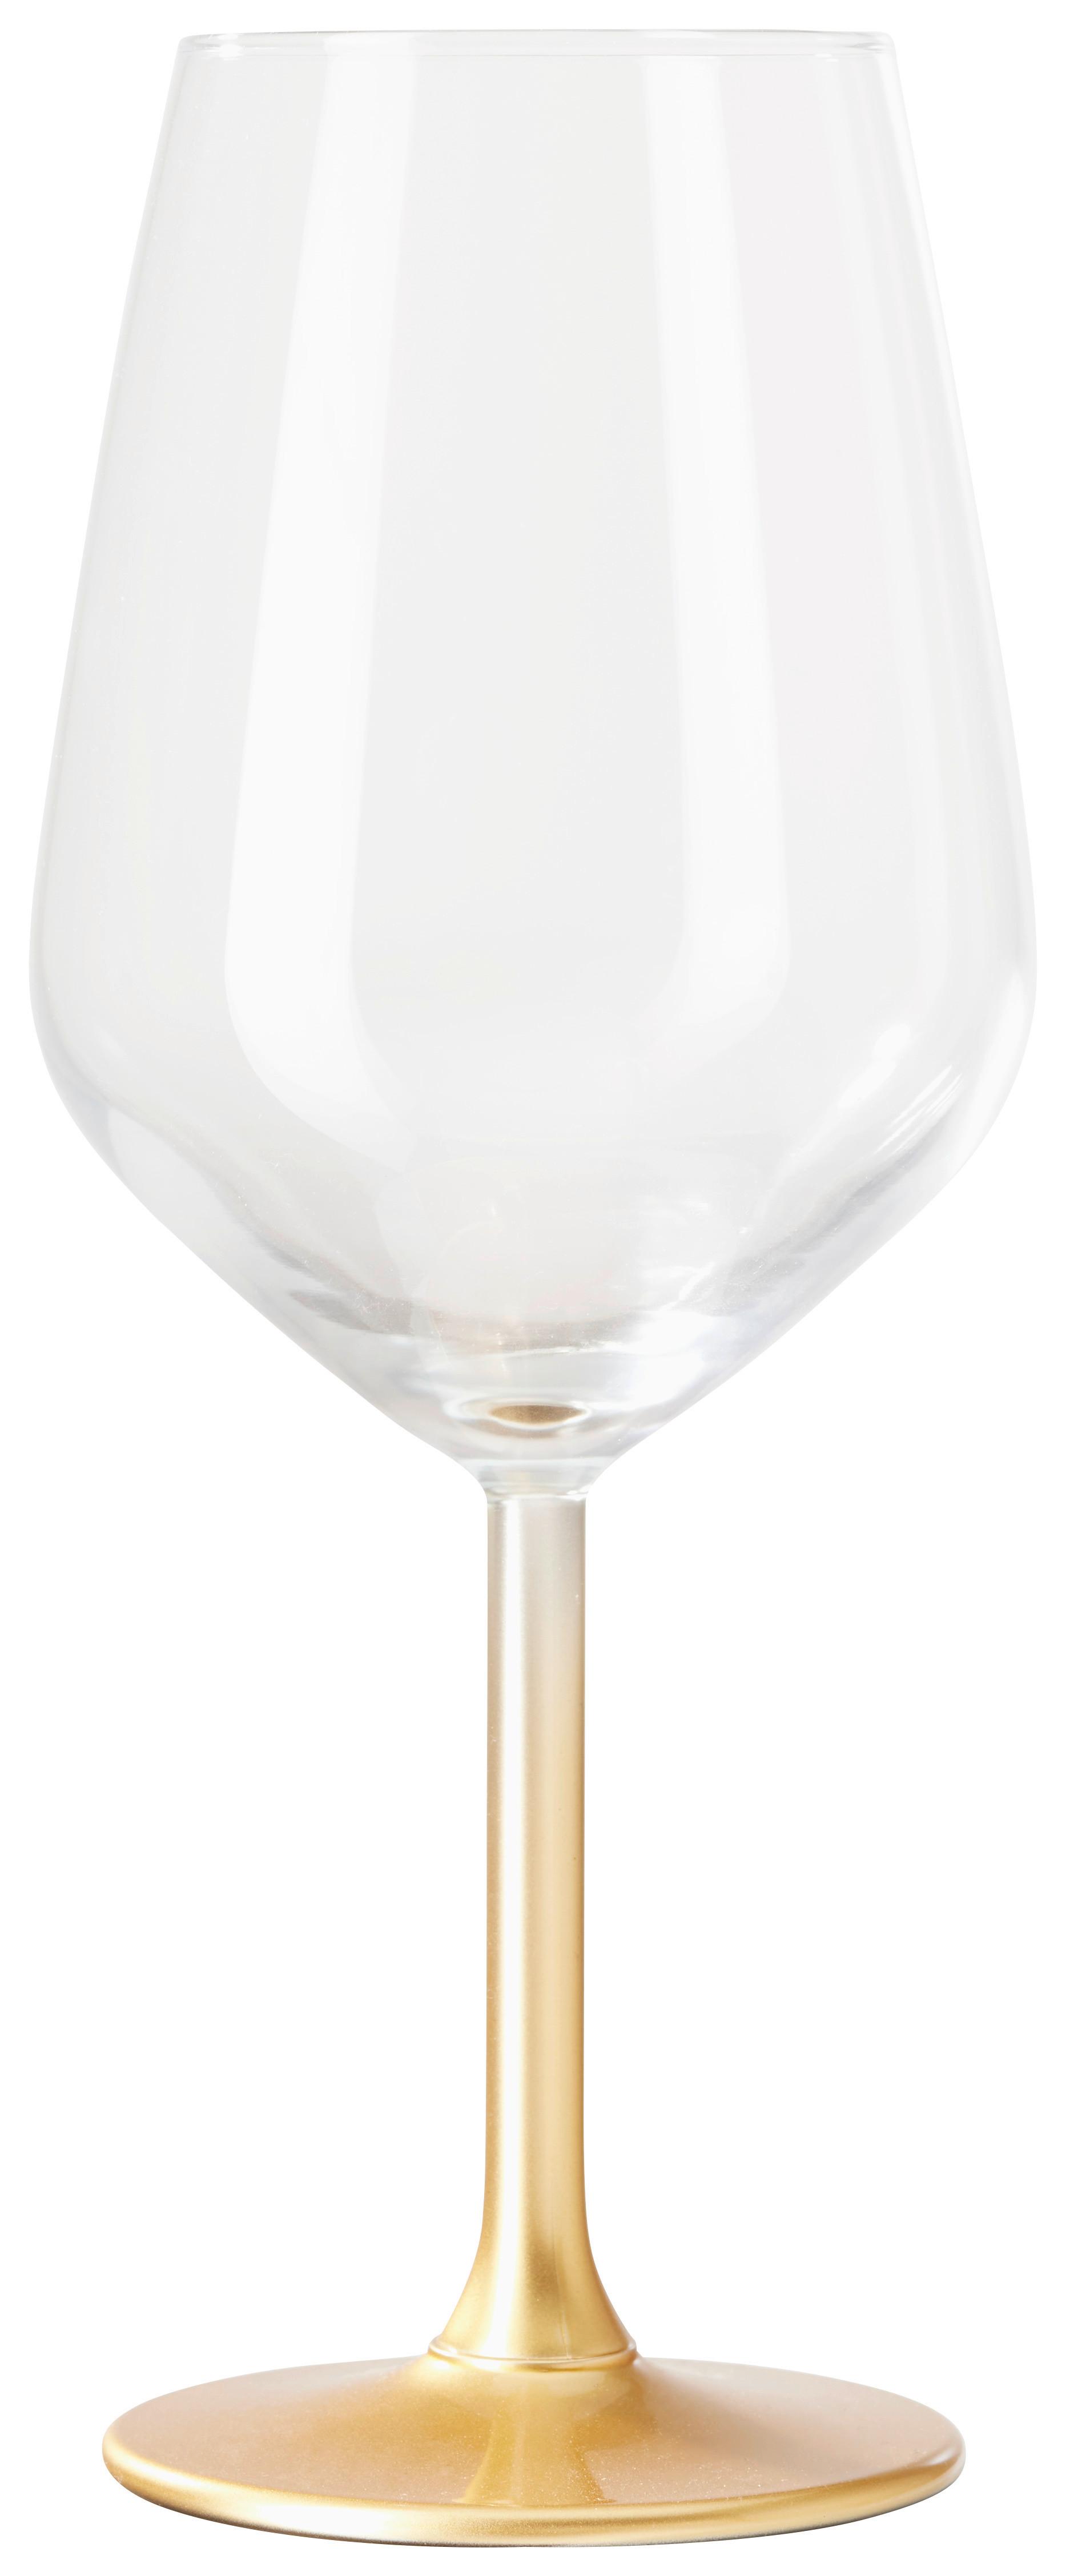 Weinglas Leo in Goldfarben ca. 490ml - Goldfarben, ROMANTIK / LANDHAUS, Glas (6,4/22cm) - Modern Living